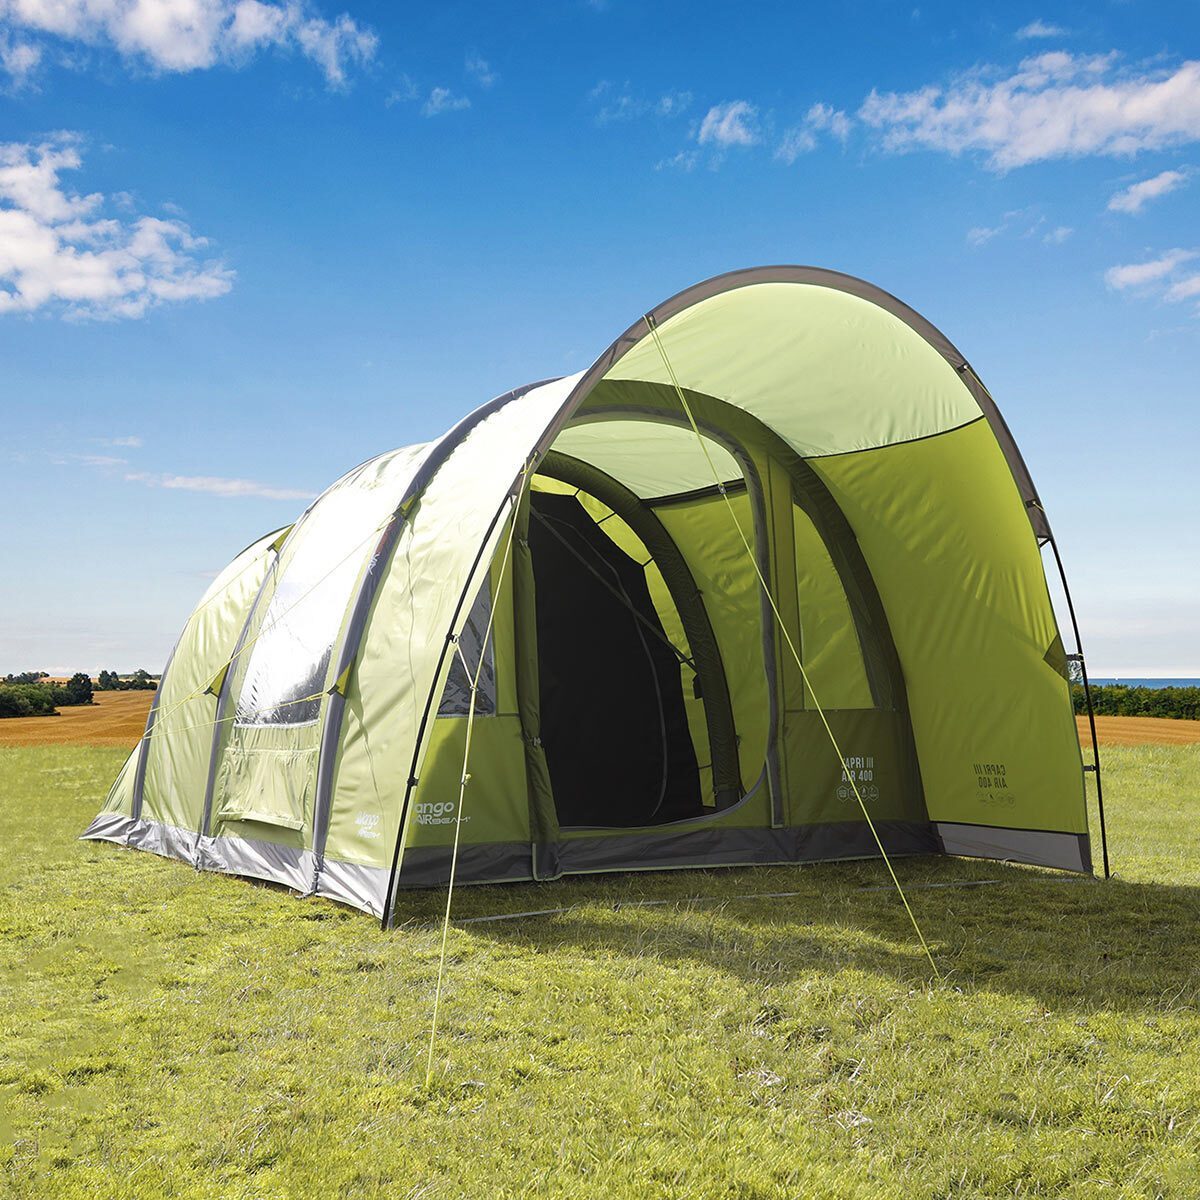 Vango Capri III 400 AirBeam® 4 Person Family Tent - Signature Retail Stores